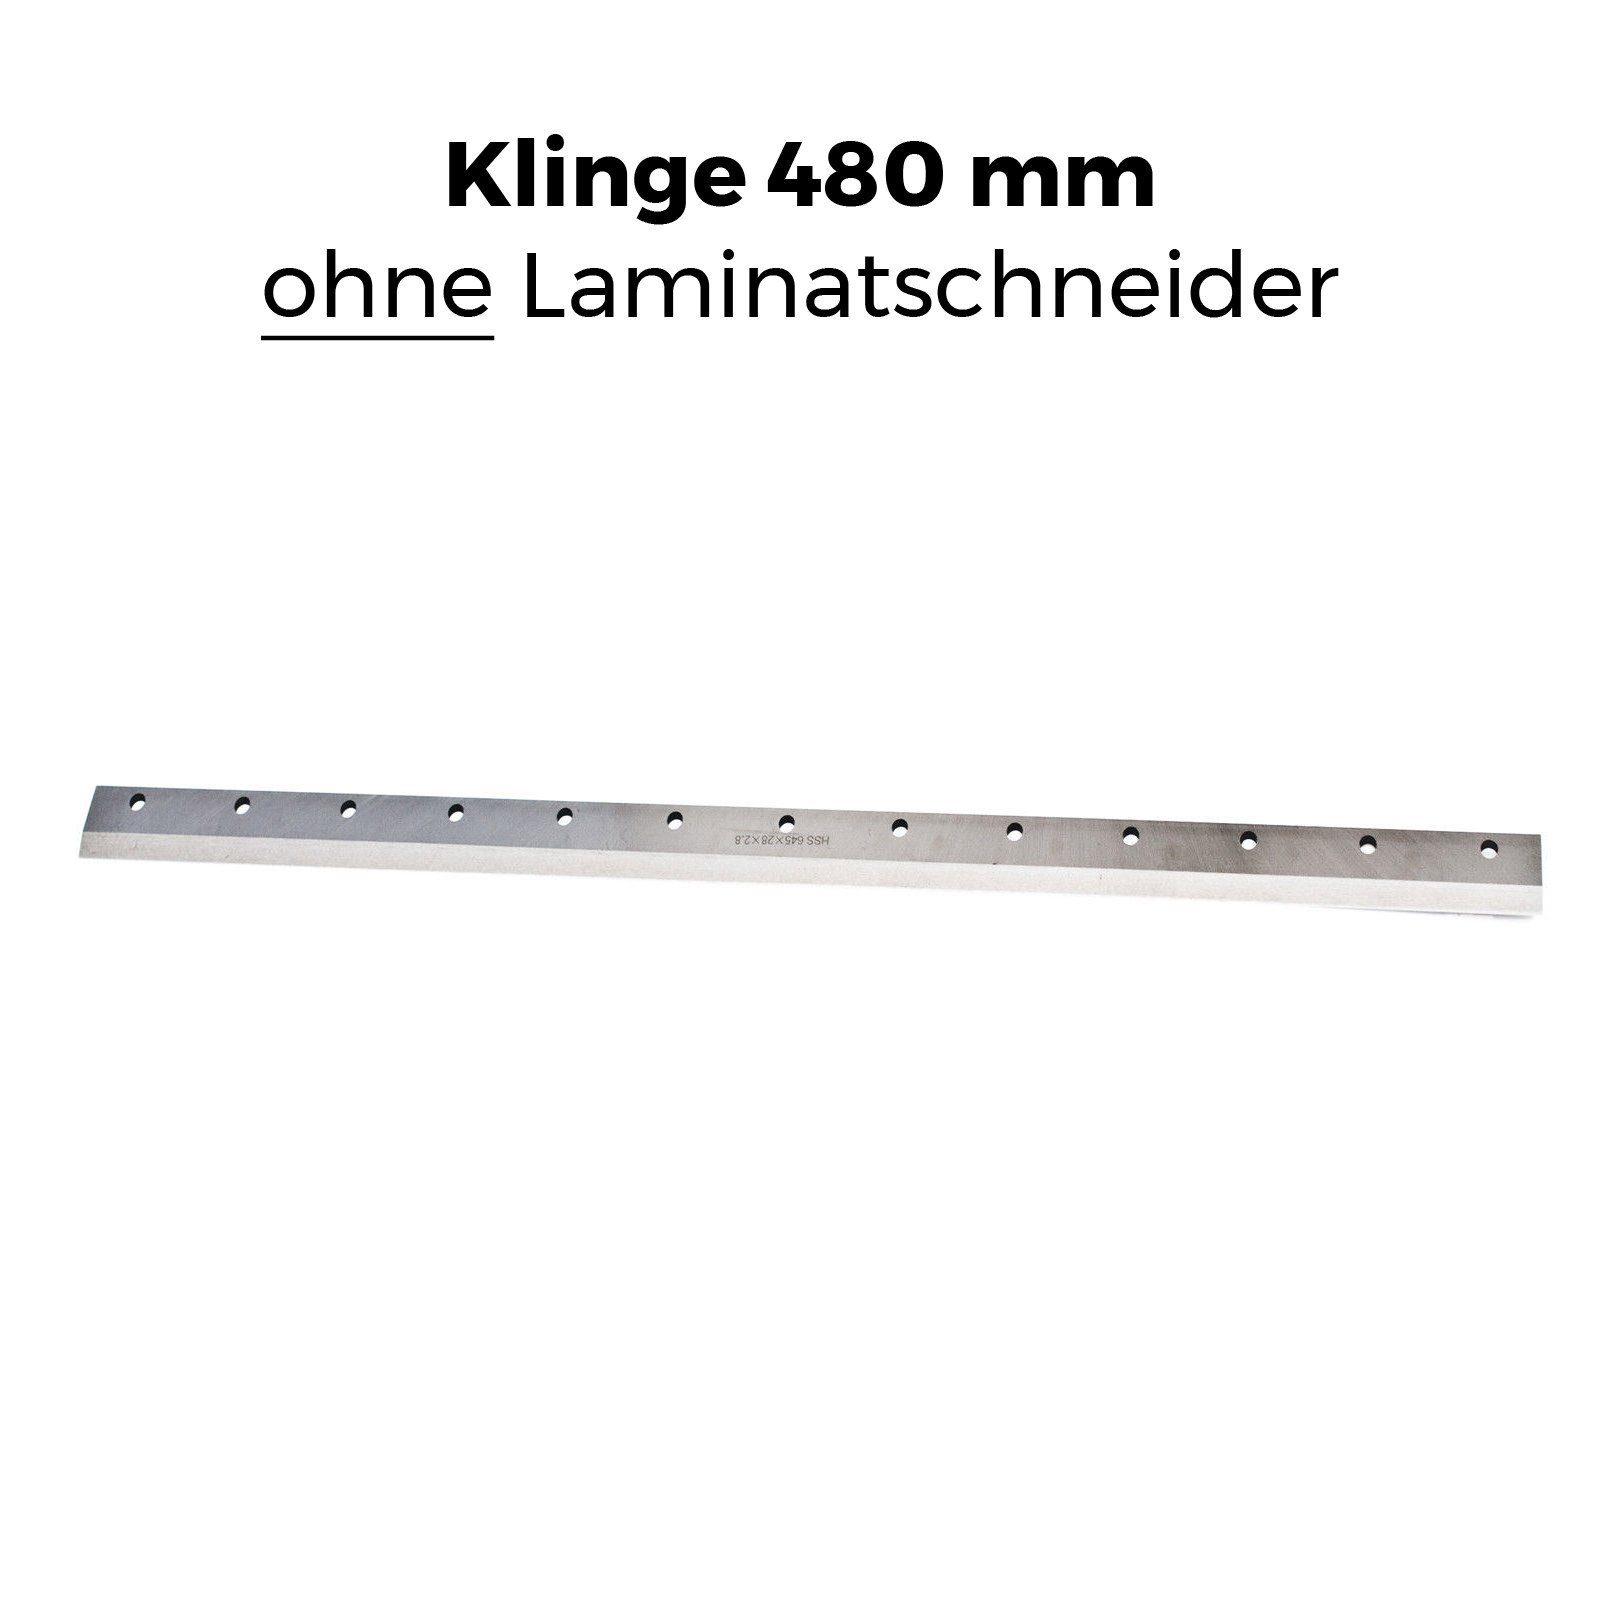 GS-TÜV 48 max. Ersatzklinge », mm in III Laminatschneider 480 gehärteter Modell Schnittbreite: cm, » für geprüft » Stahl BAUTEC passend